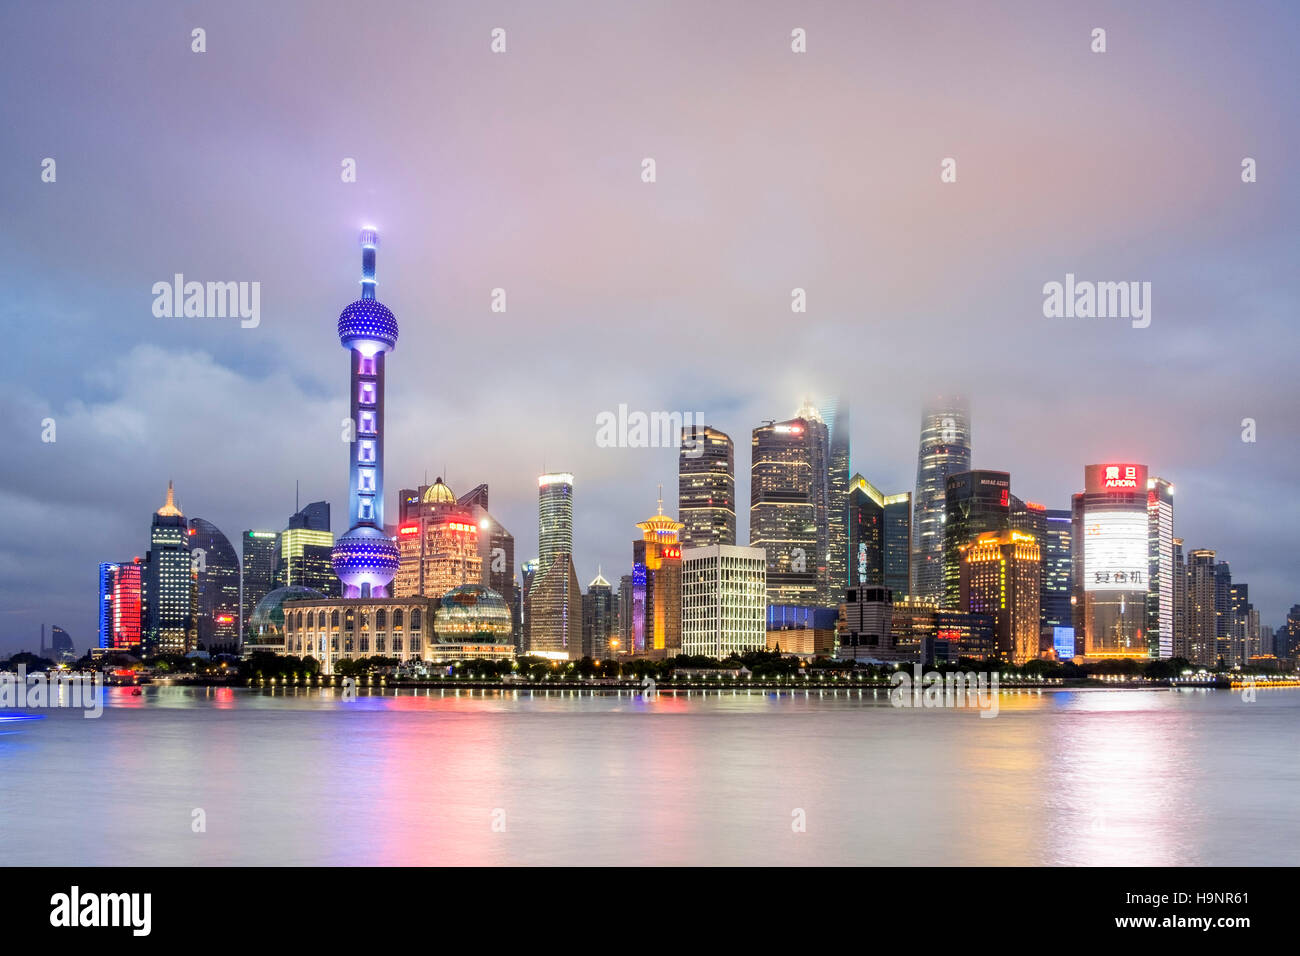 Shanghai Skyline viewed over the Haungpu River China Stock Photo